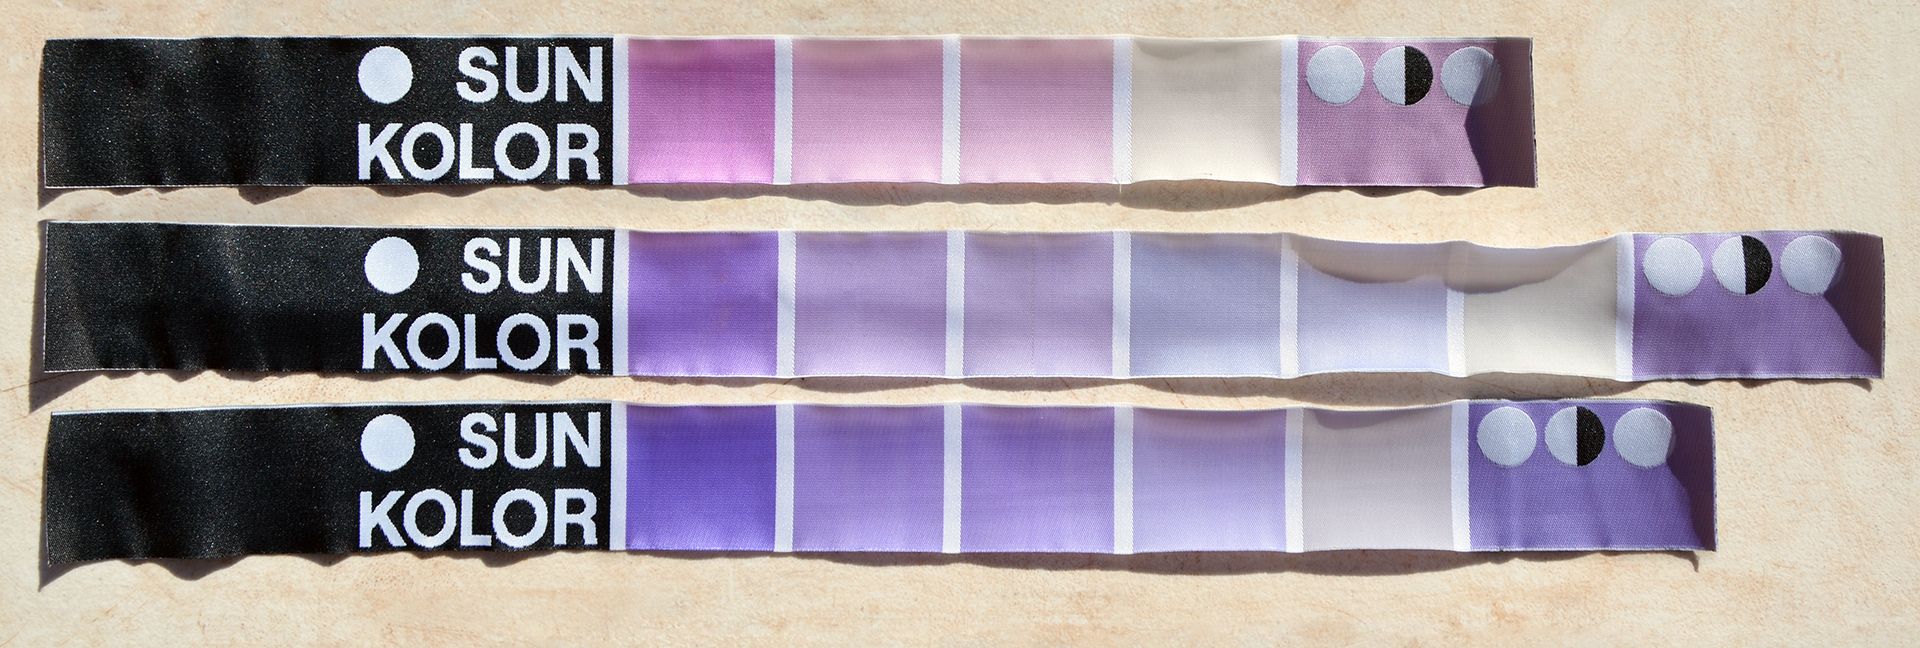 Drei Stoffstreifen von sun kolor mit Farb-Paletten von Rosa über Beige bis zu eiem hellen Lila.